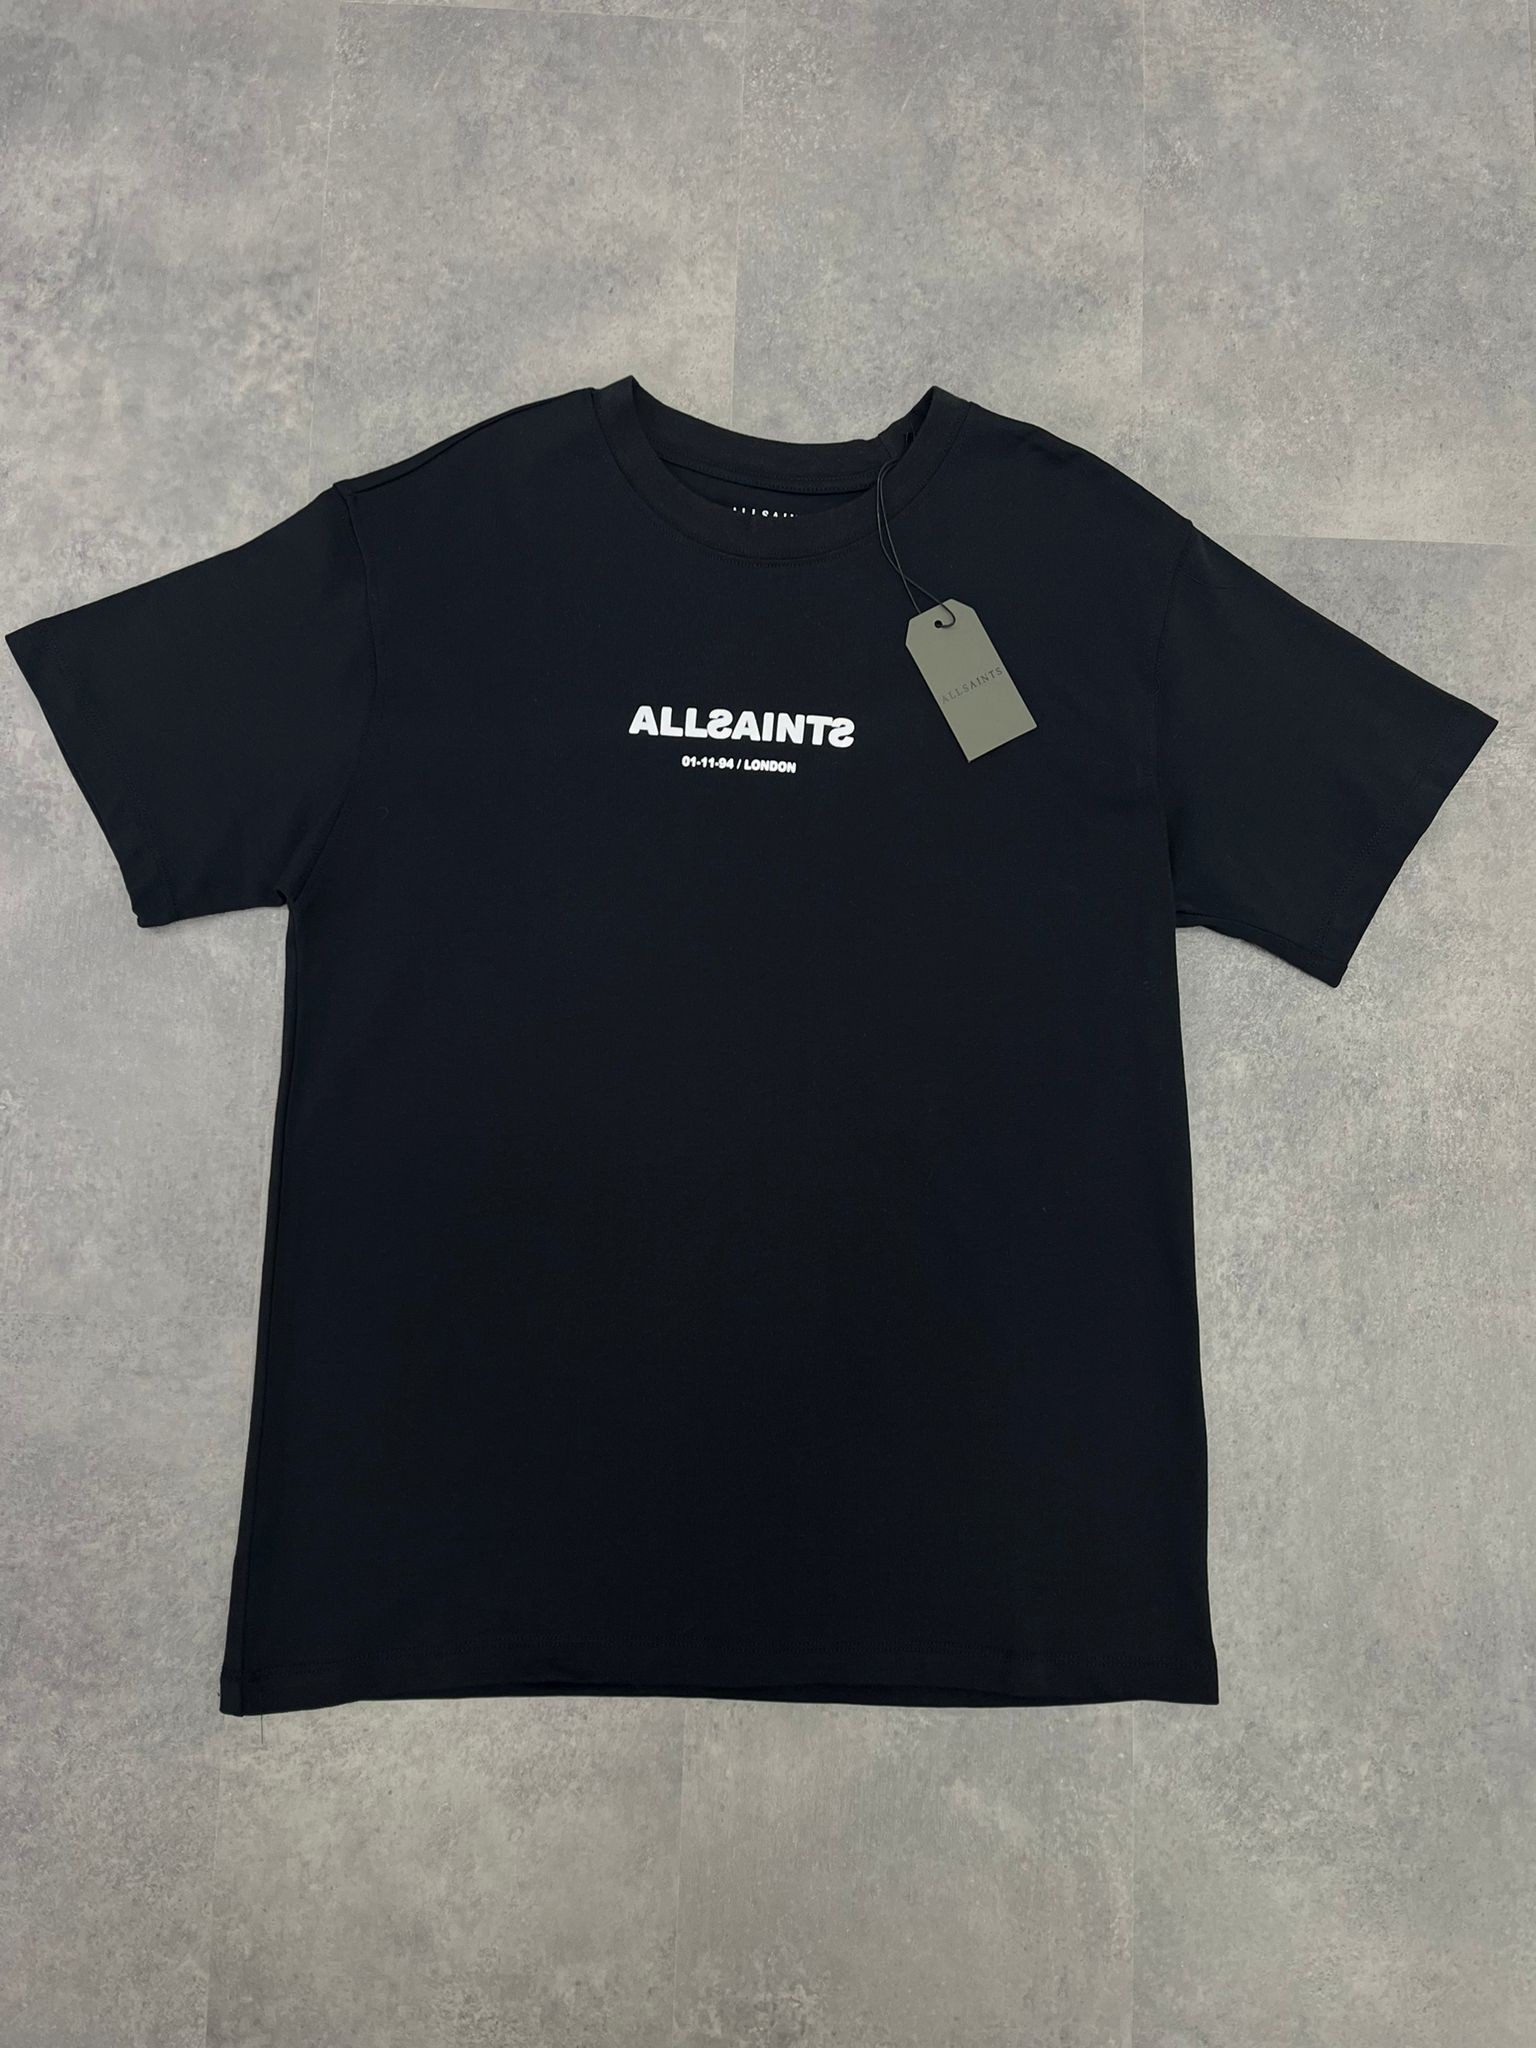 Yeni Sezon 01-11-94 London Black T-shirt